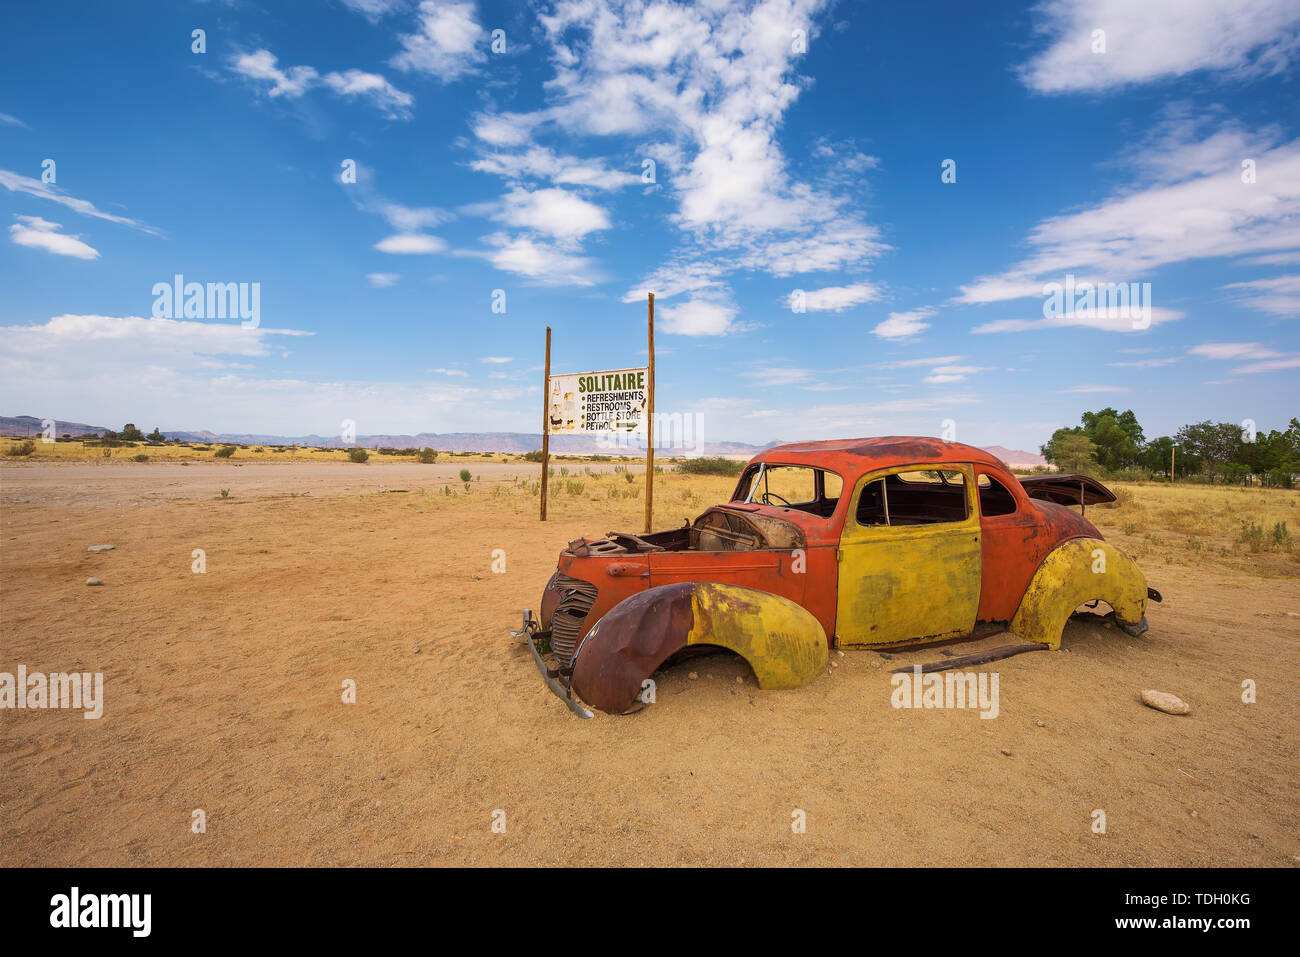 Abbandonato auto rottamata in solitaire situato nel deserto del Namib di Namibia Foto Stock